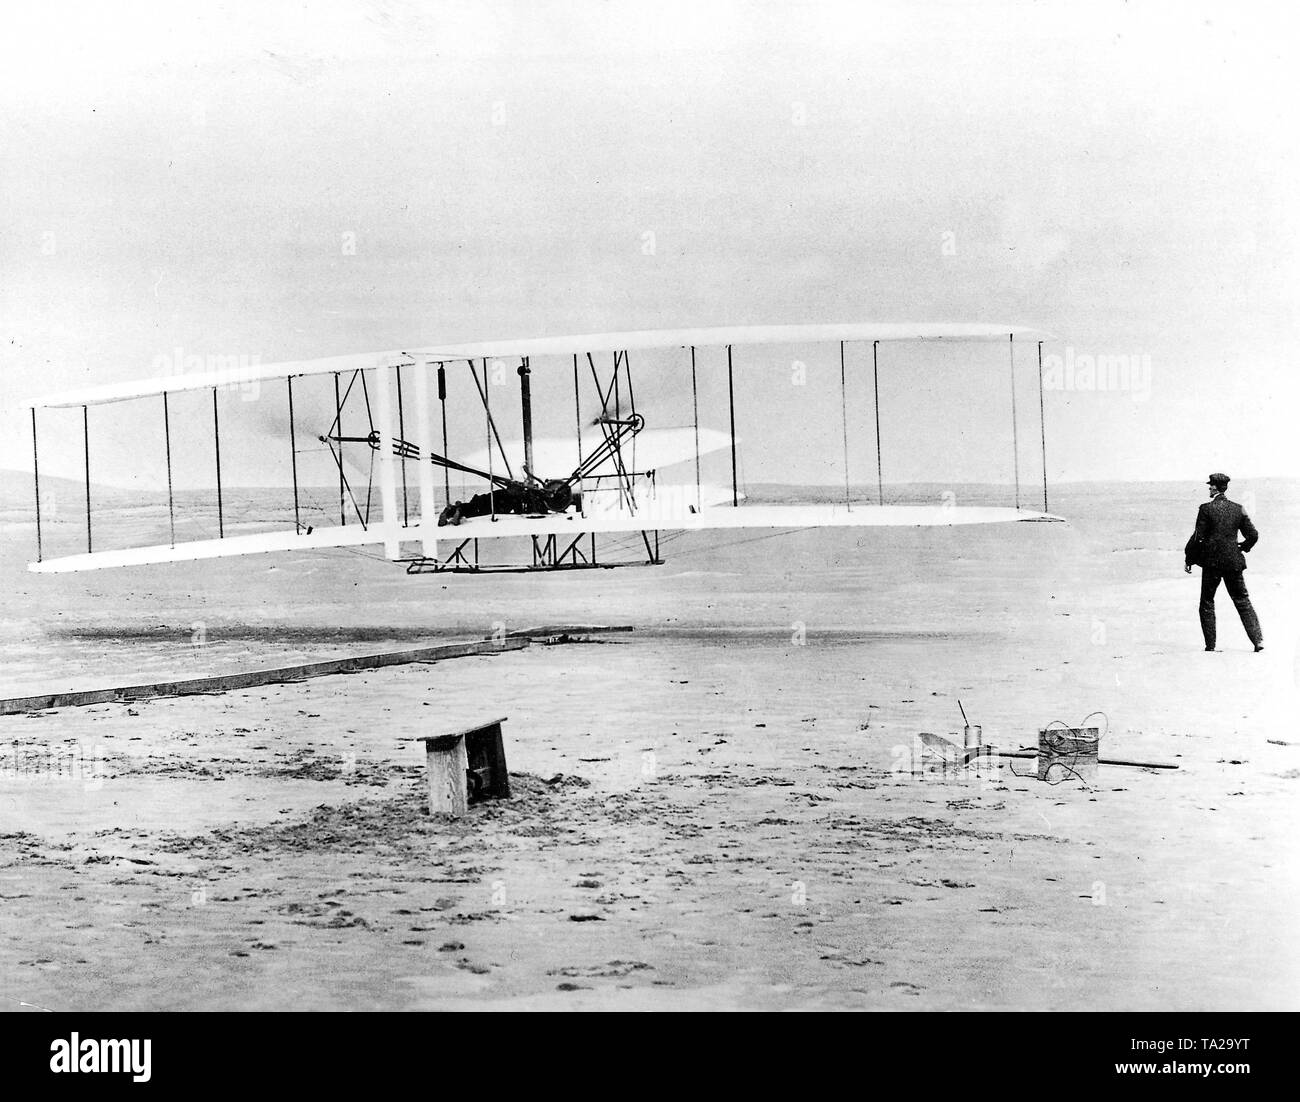 Der erste Flug mit einem Flugzeug Motor ist es gelungen, von den Brüdern Orville und Wilbur Wright am 17/12/1903 mit ihren selbst gebauten "Flyer I" am Strand von Kitty Hawk. Stockfoto